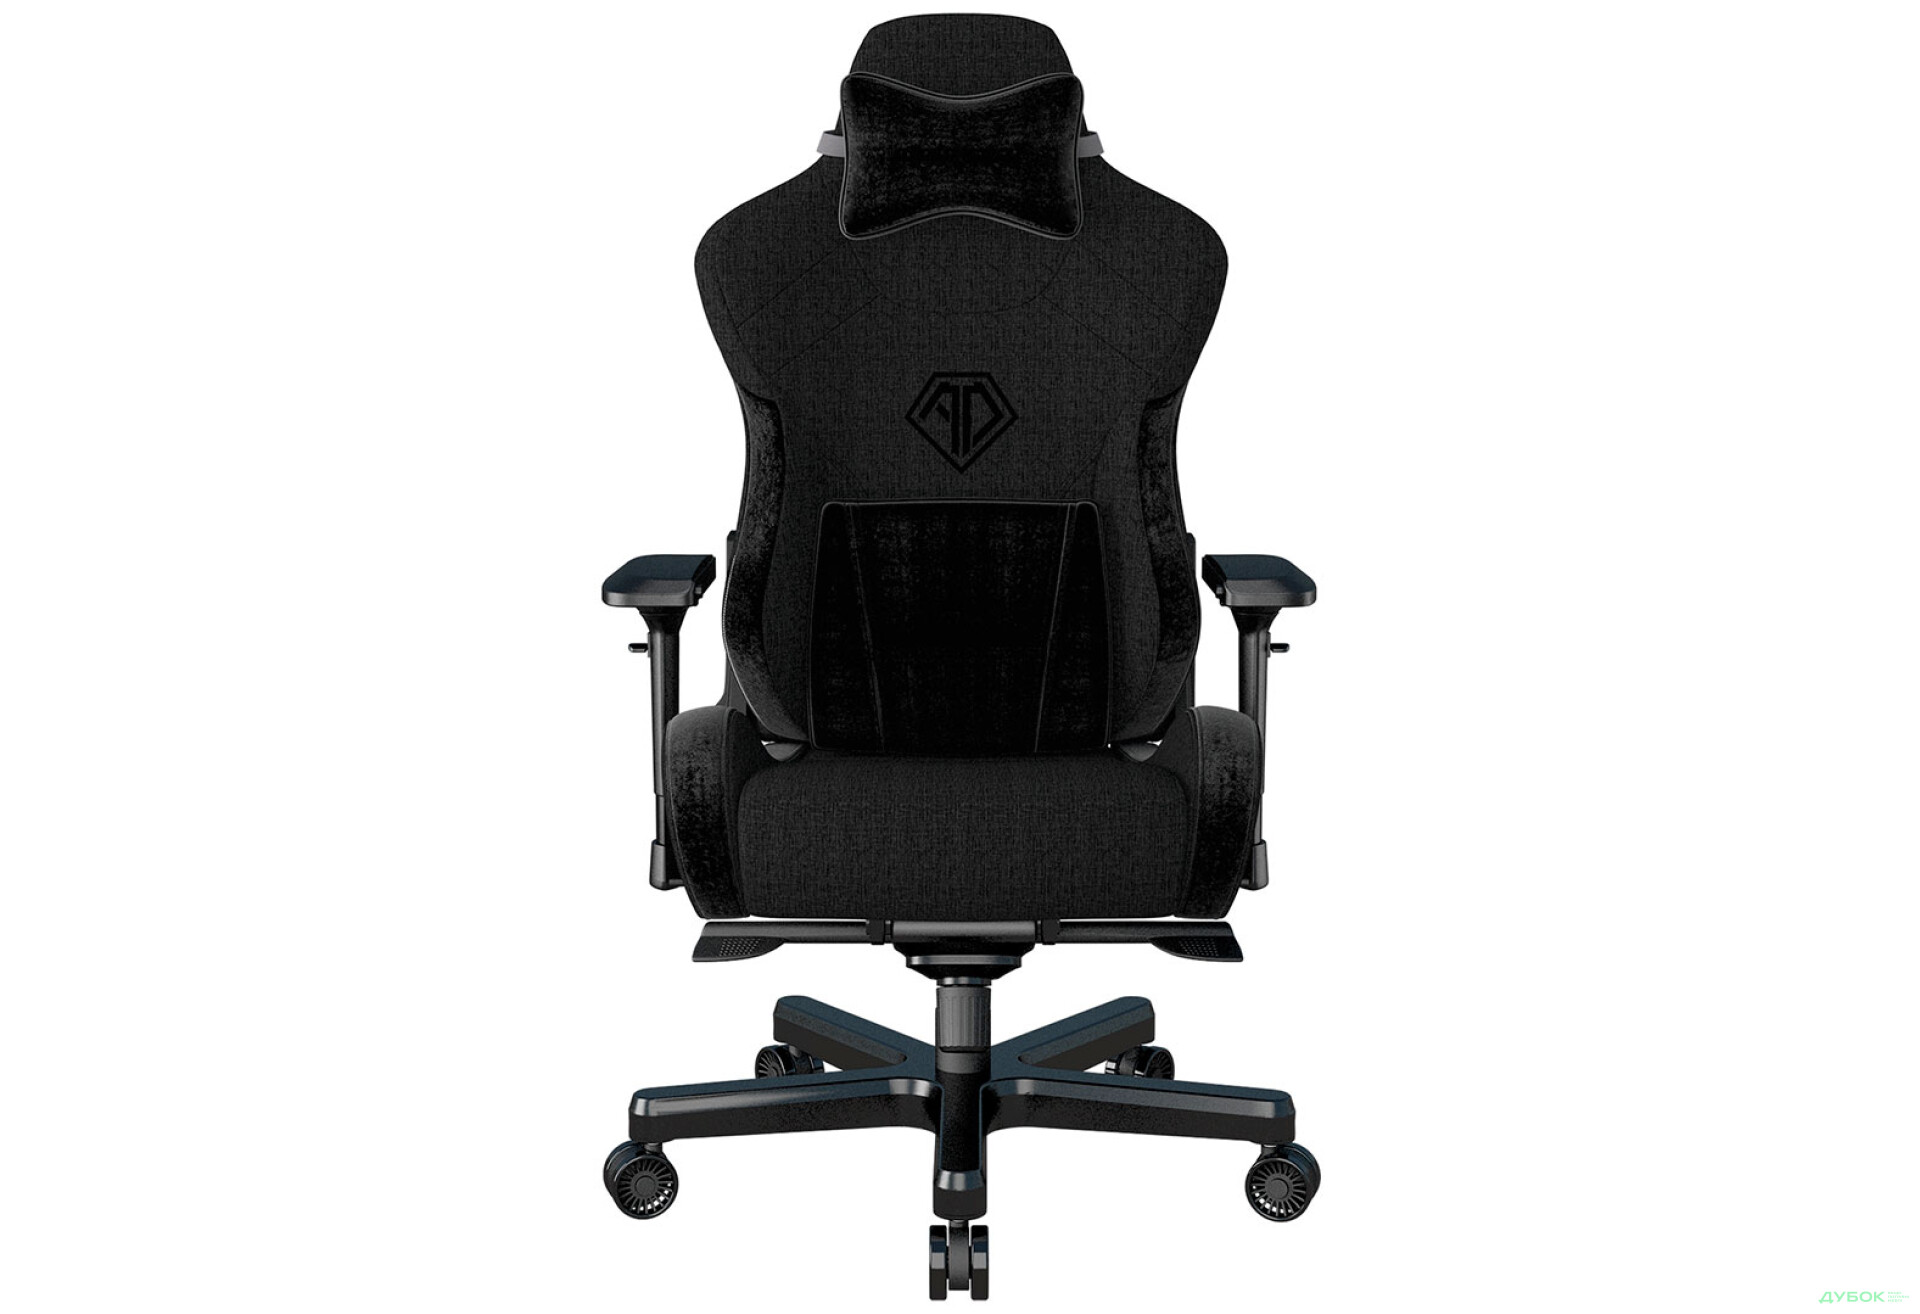 Фото 1 - Компьютерное кресло Anda Seat T-Pro 2 65x54x143 см игровое, черное